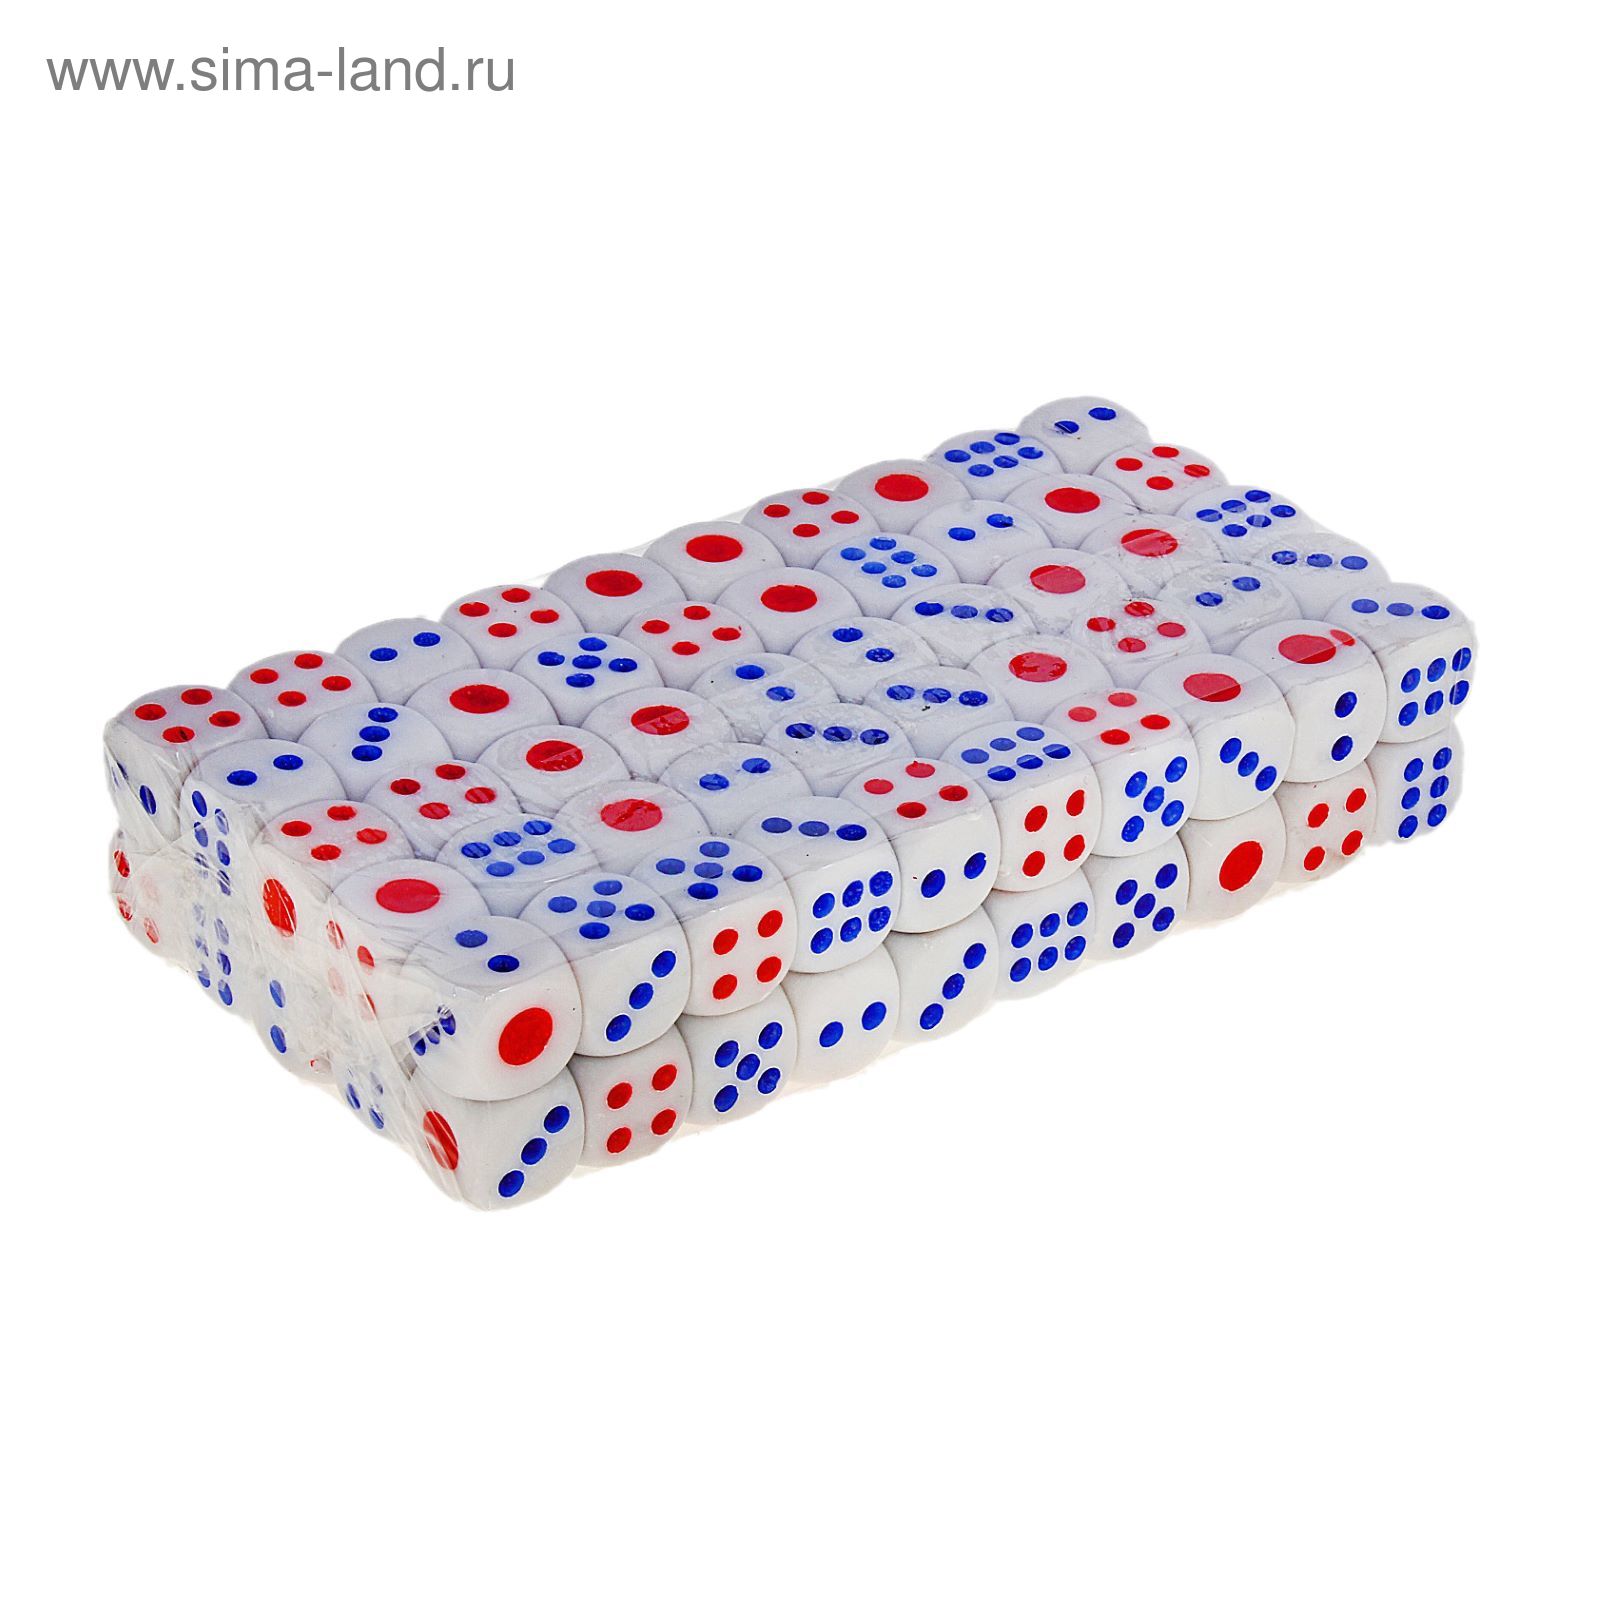 Кости игральные 1,3 × 1,3 см, белые с цветными точками, фасовка 100 шт.